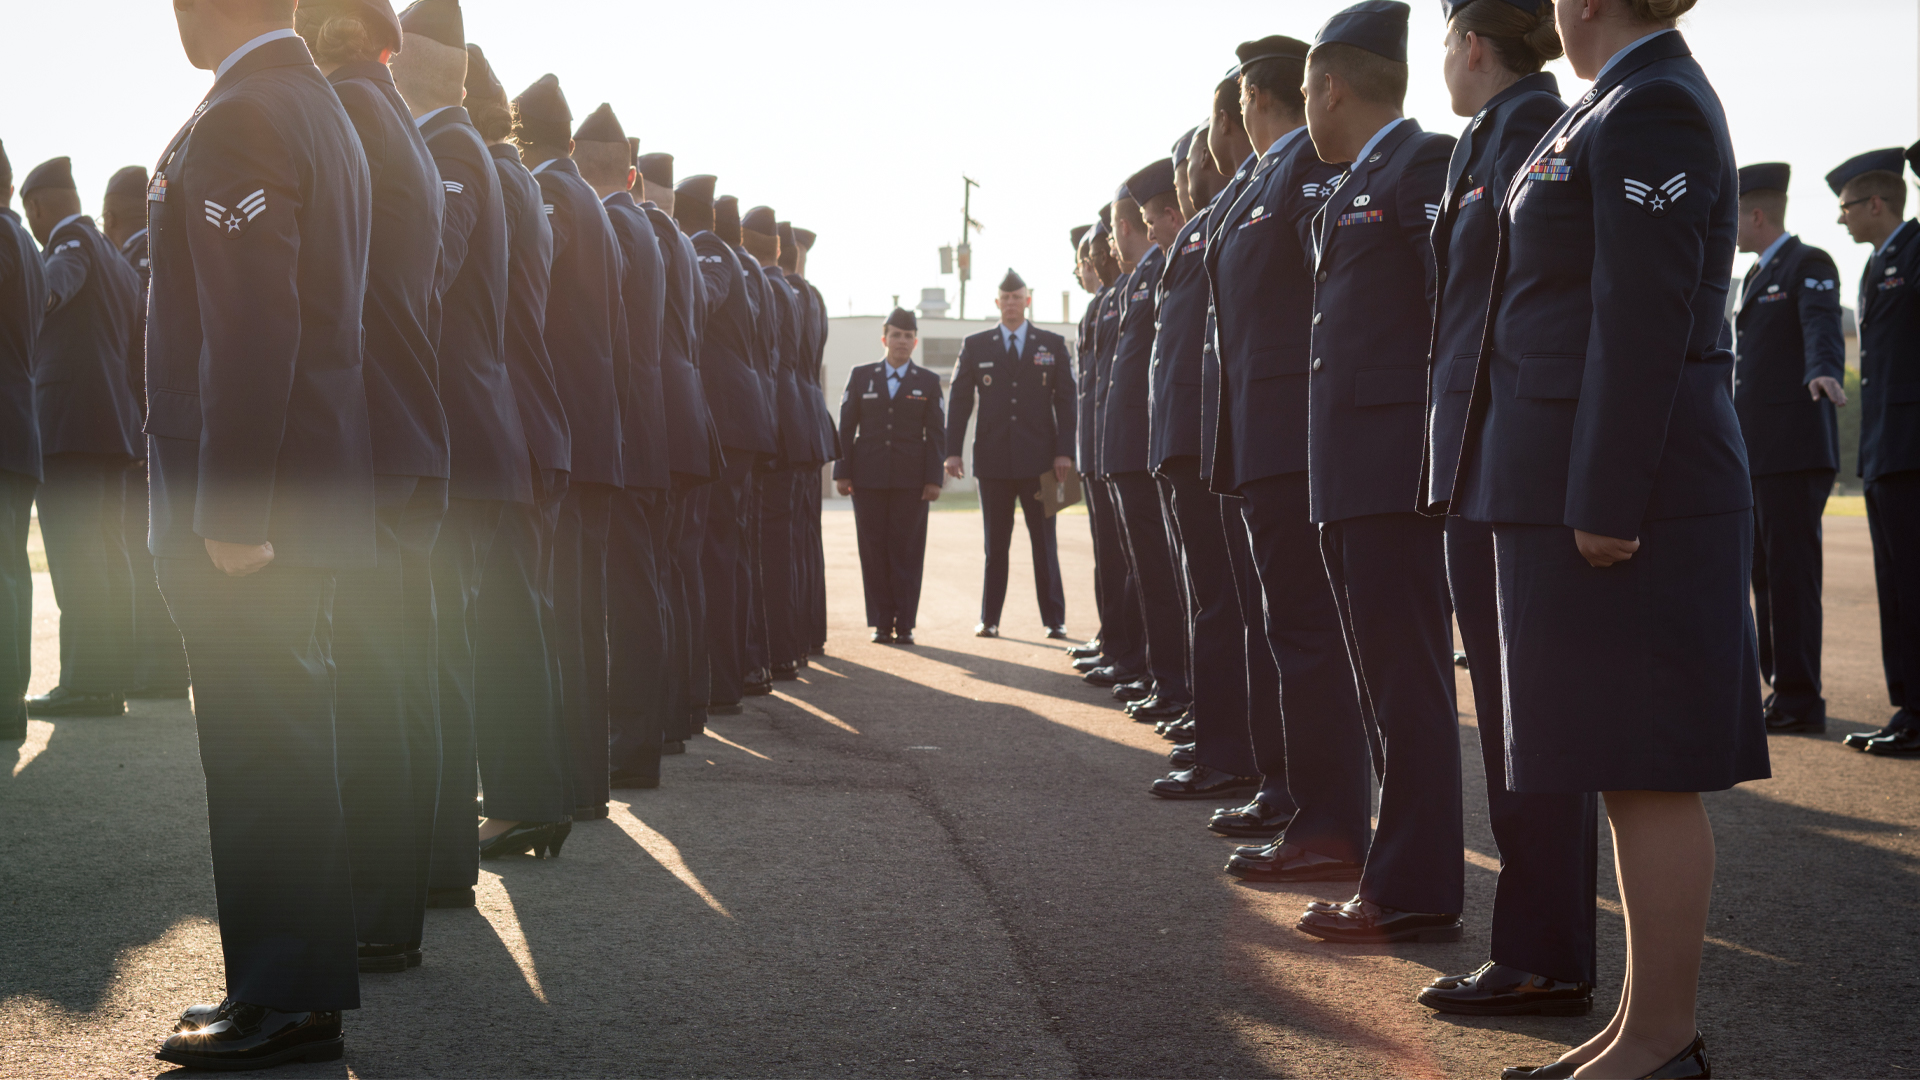 Dlats Air Force Men's Service Dress Uniform Trousers, Uniforms, Military